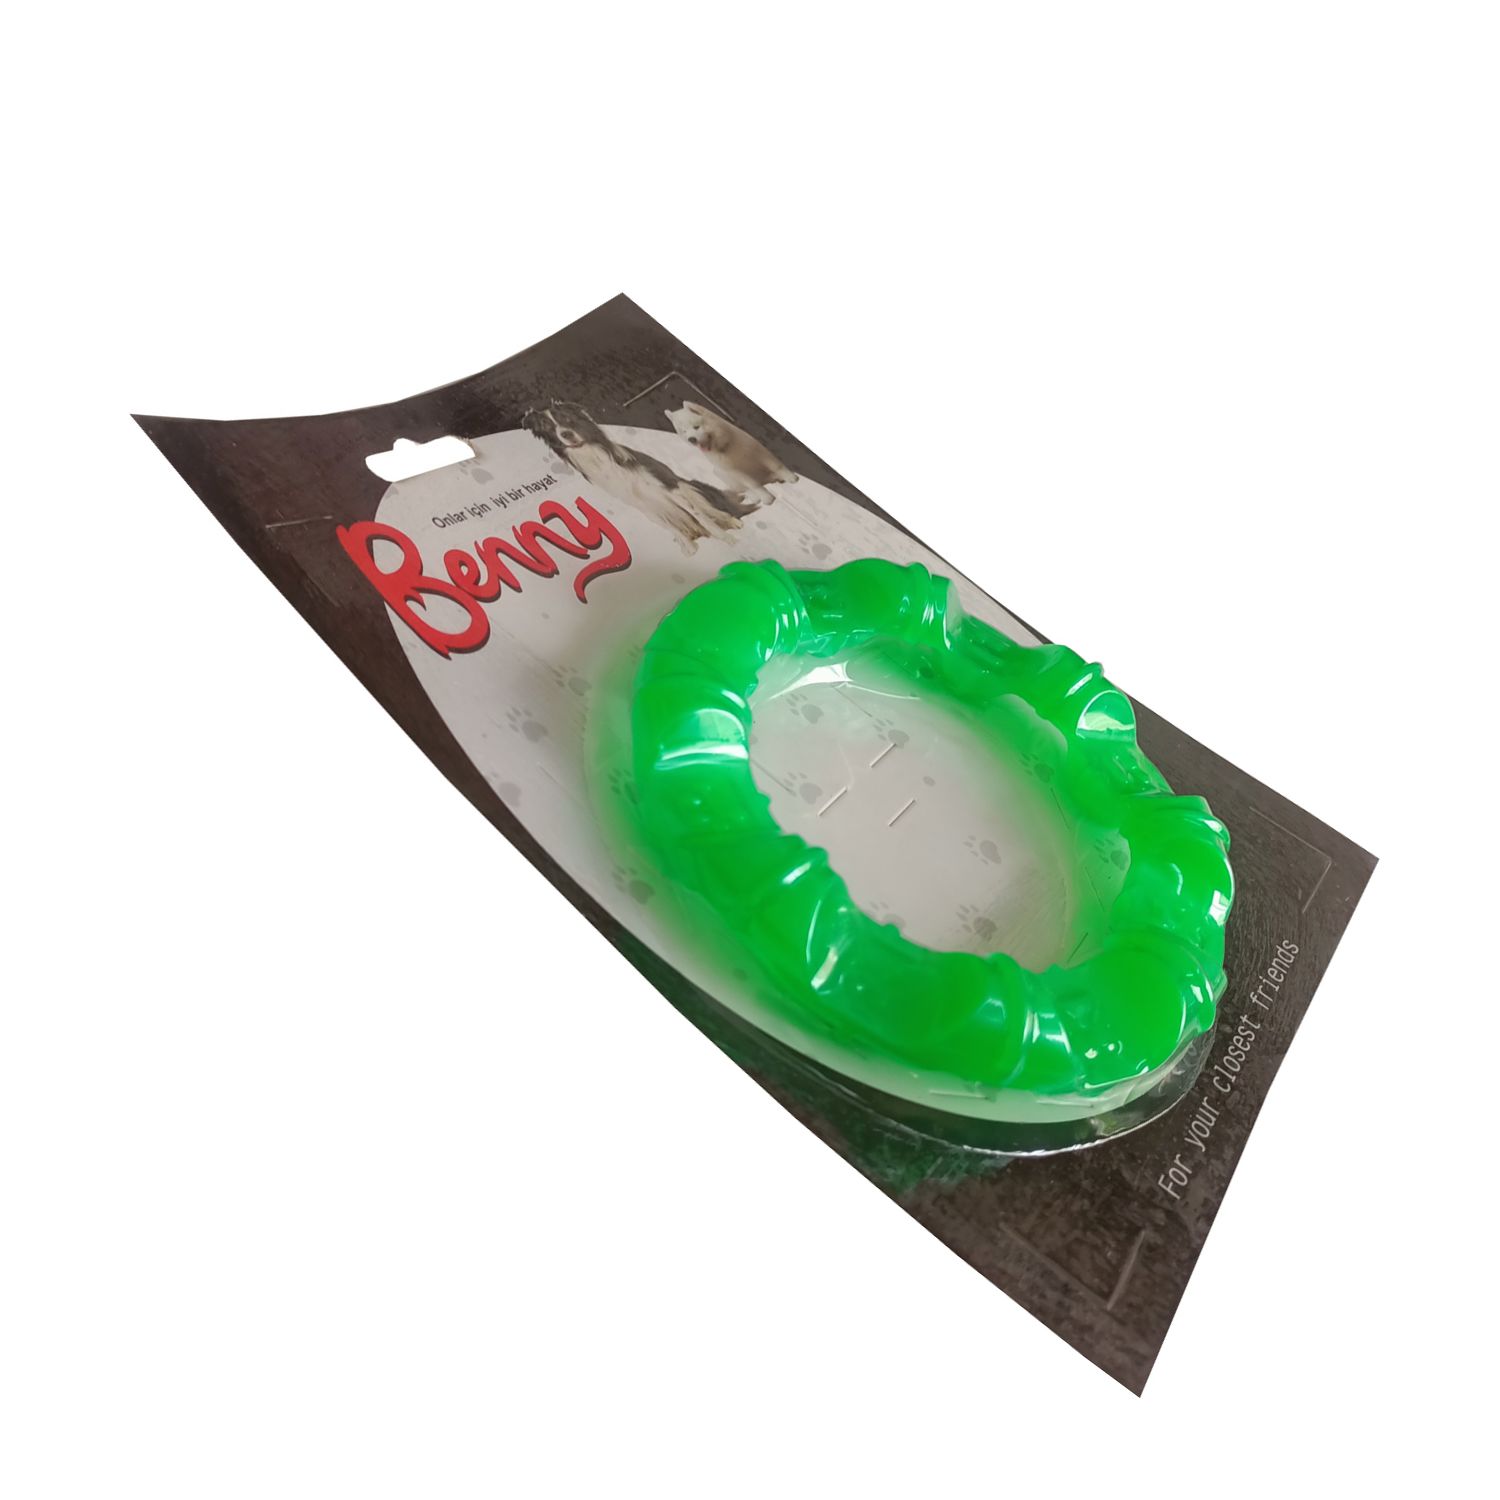 Benny Köpek Oyuncağı Yuvarlak Şekilli 11,5 cm Yeşil